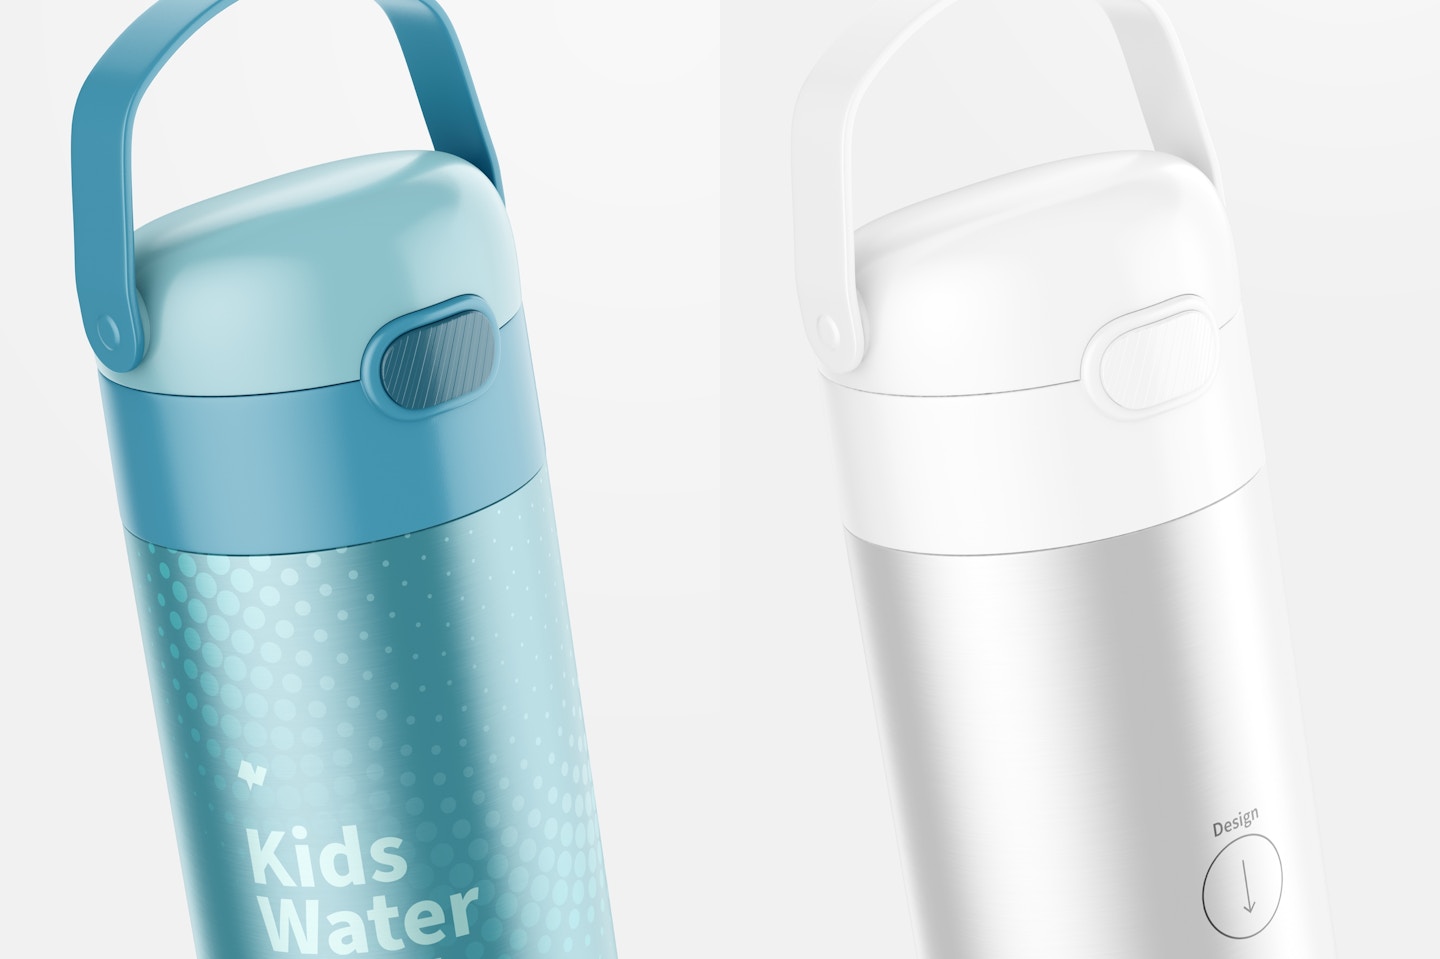 12 oz Kids Water Bottle Mockup, Close Up